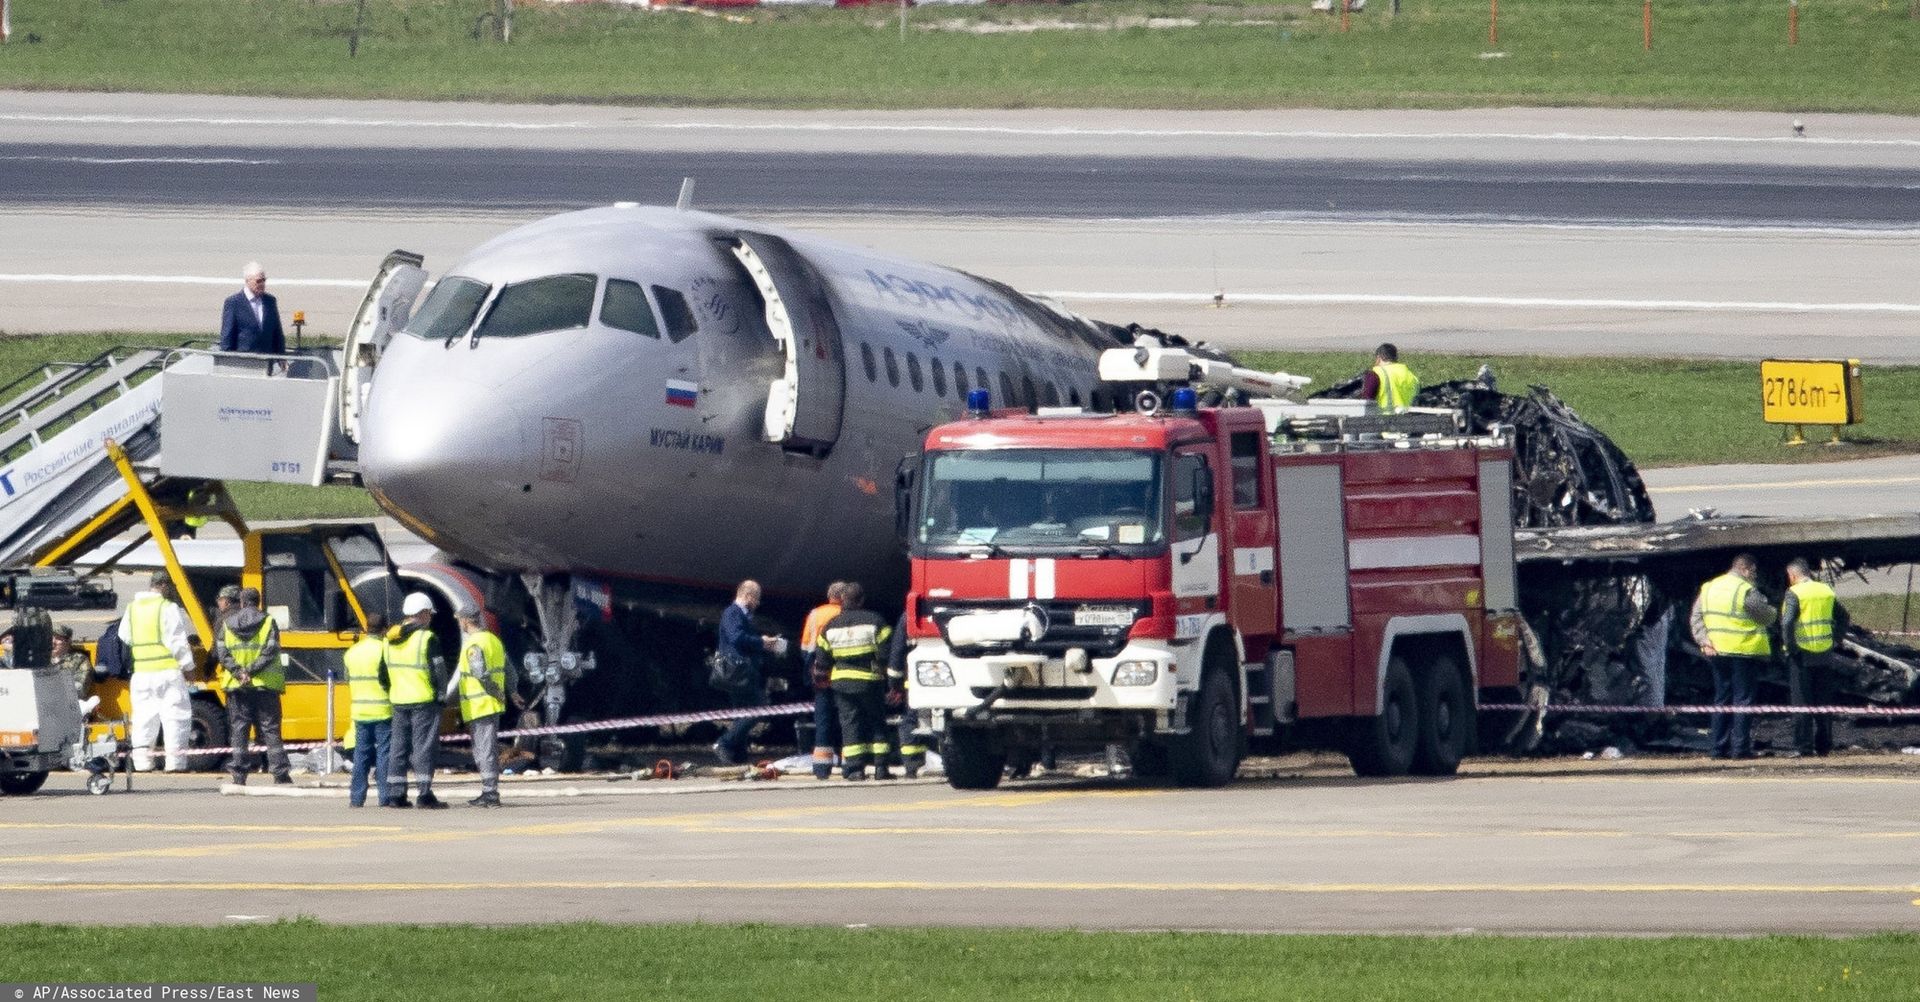 Rosja. W samolot uderzył piorun. Ukarzą pilota za śmierć 41 osób